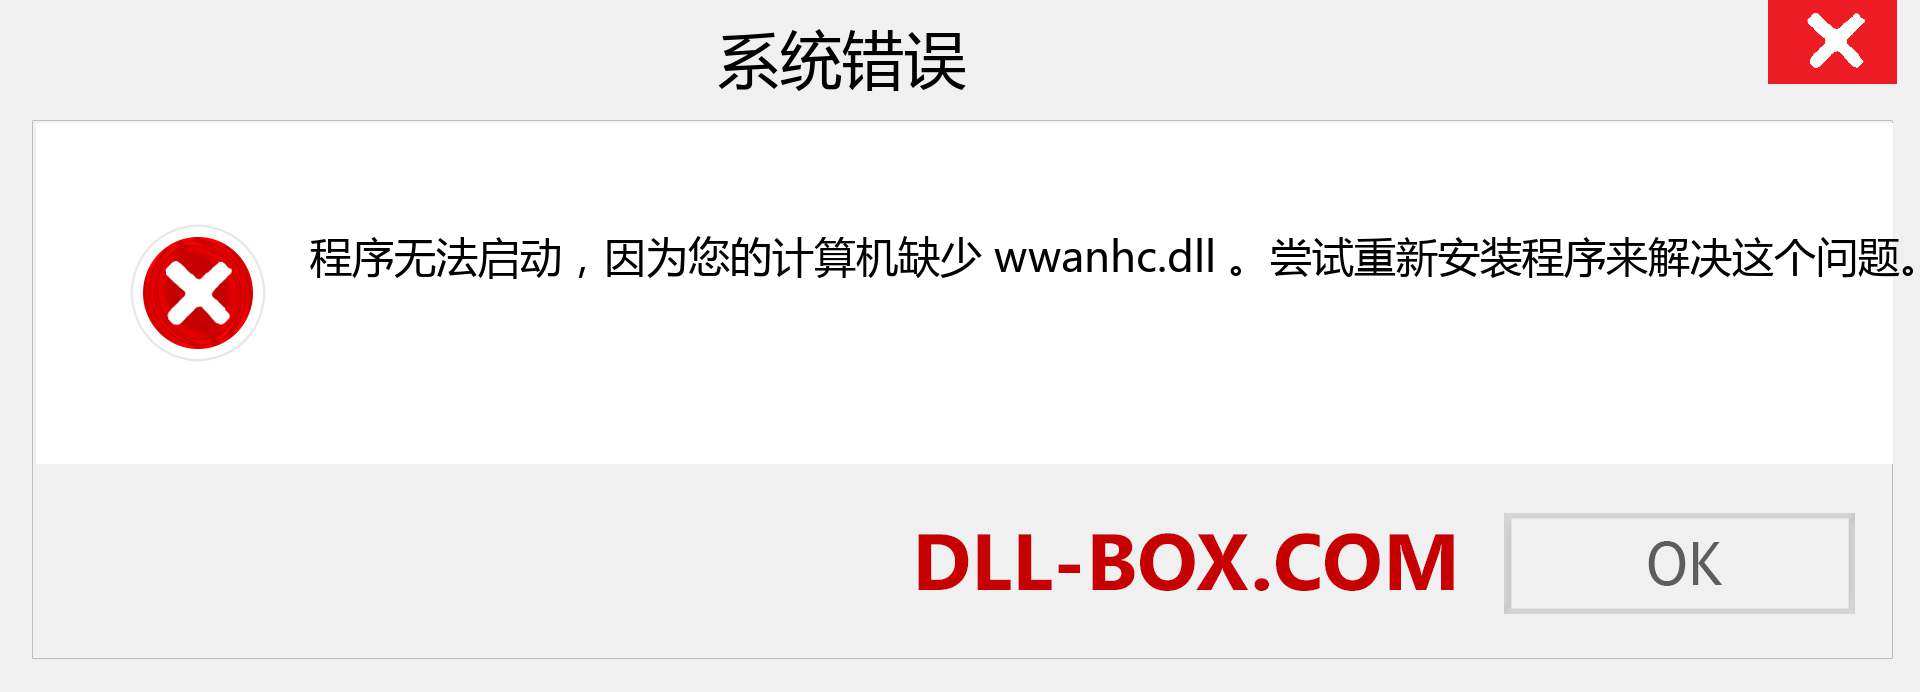 wwanhc.dll 文件丢失？。 适用于 Windows 7、8、10 的下载 - 修复 Windows、照片、图像上的 wwanhc dll 丢失错误